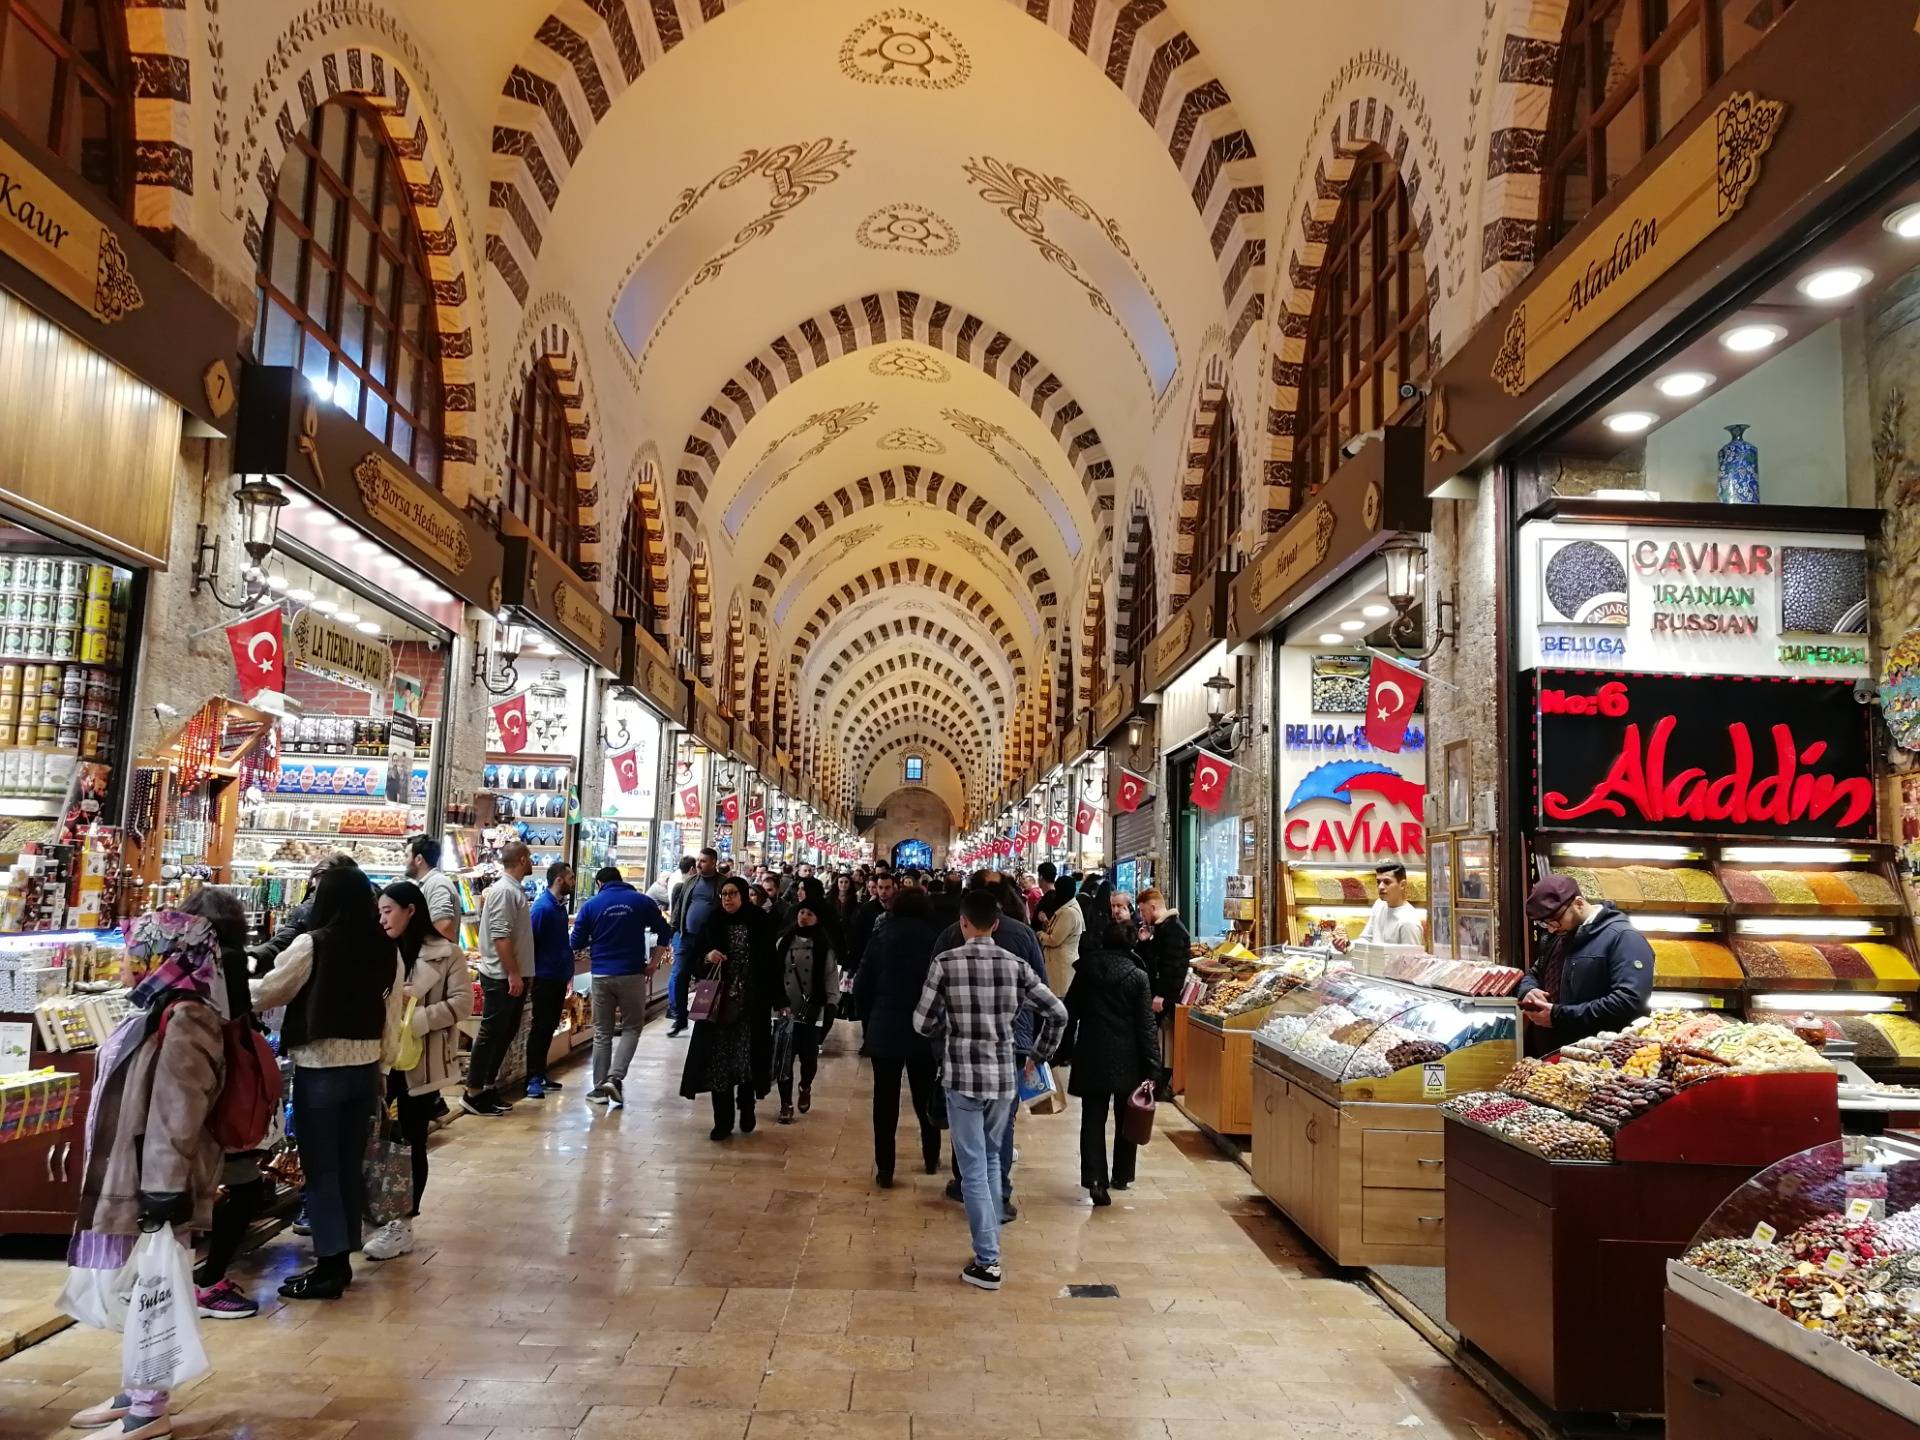 📷 Mısır Çarşısı (Egyptian Spice Bazaar) In Istanbul